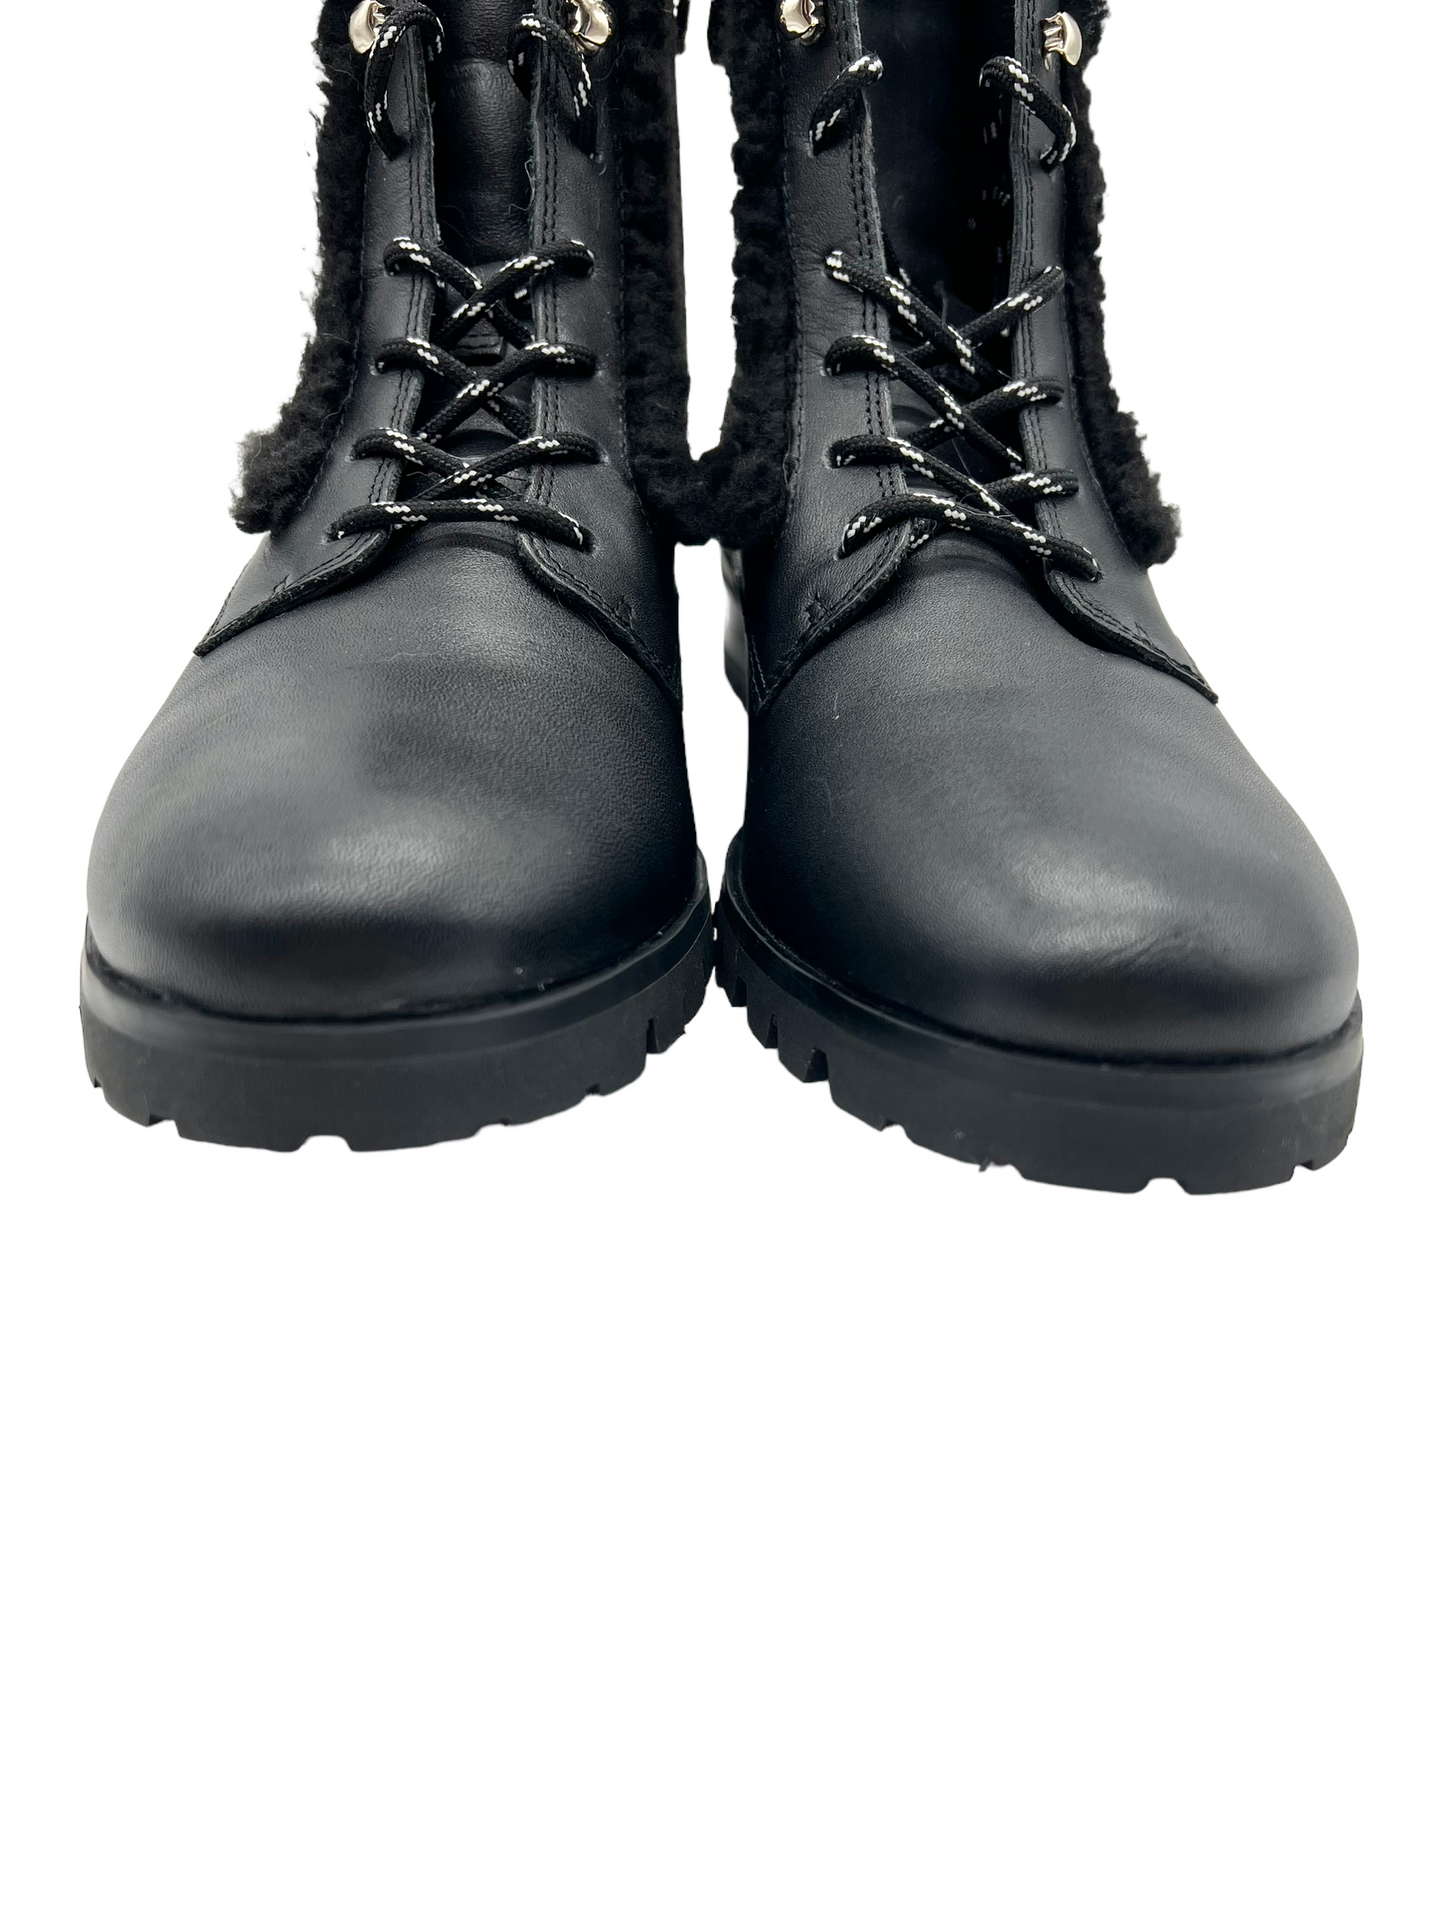 Kate Spade Black Leather Faux Fur Trim Size 7.5 Combat Boots